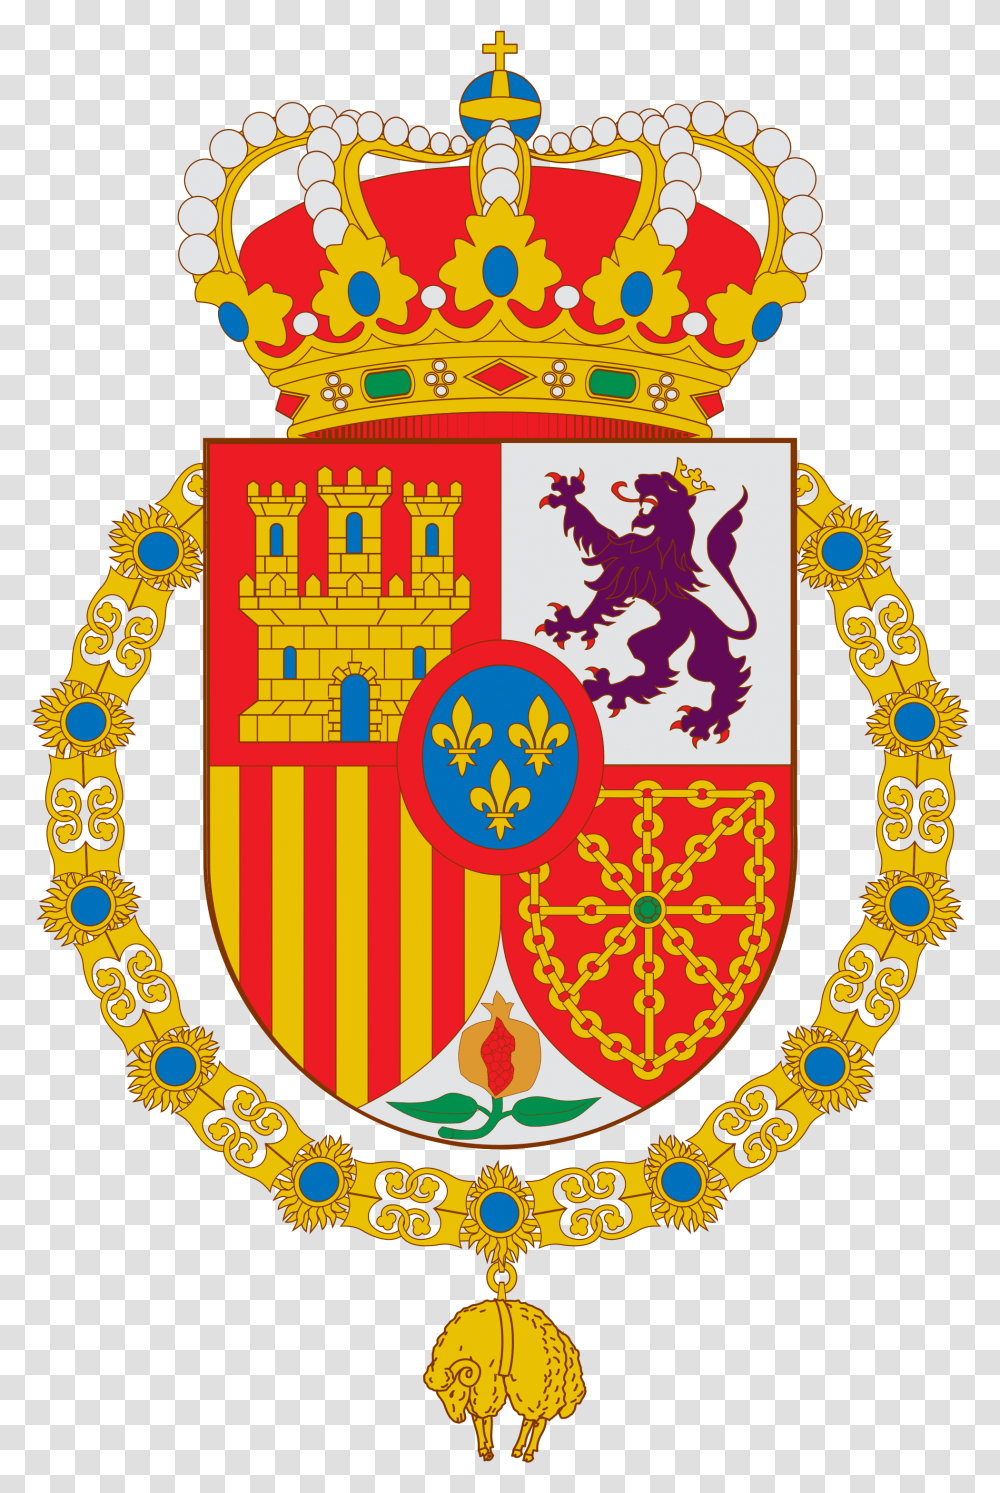 Escudo Felipe Vi De Espana Grande Svg, Logo, Trademark, Badge Transparent Png